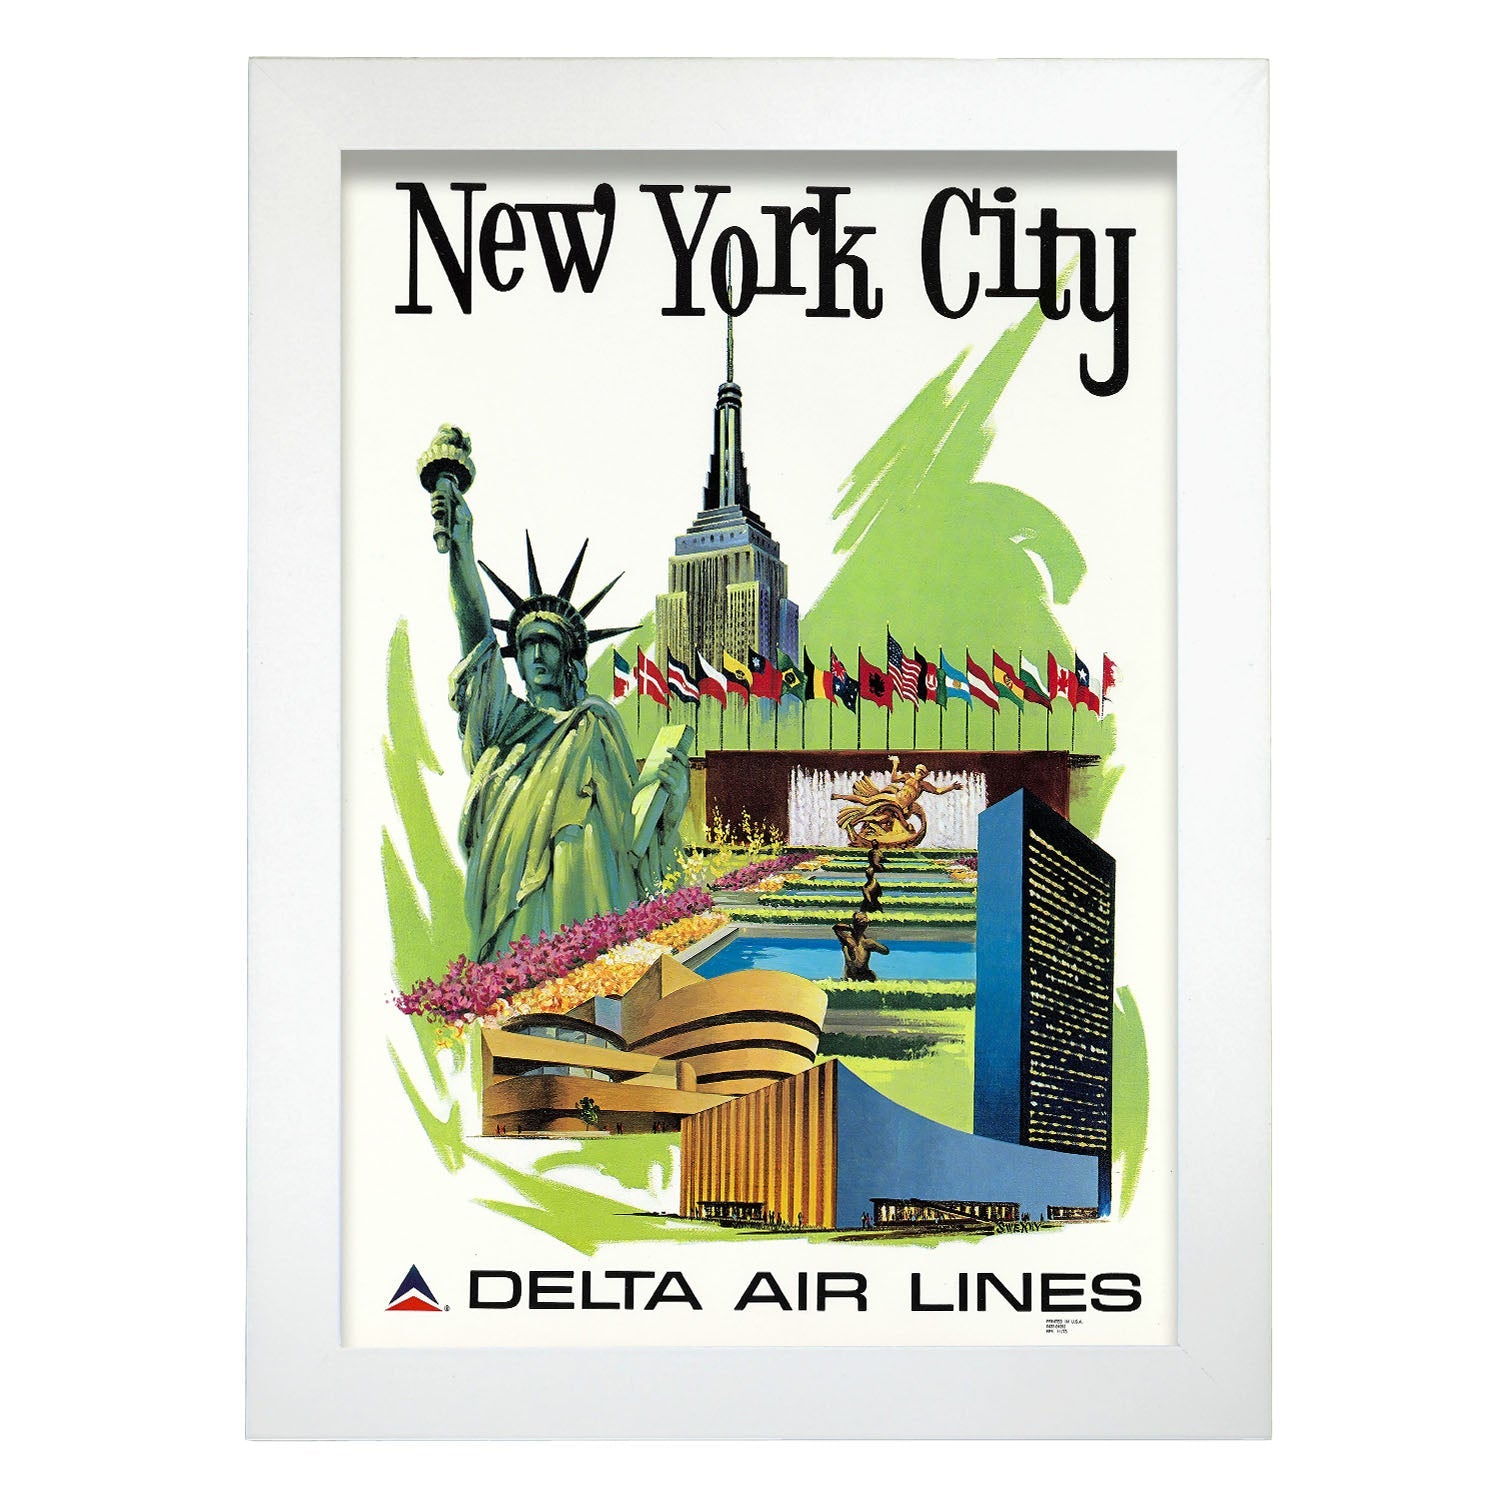 1960s_Delta_in_New_York_ad-Artwork-Nacnic-A4-Marco Blanco-Nacnic Estudio SL